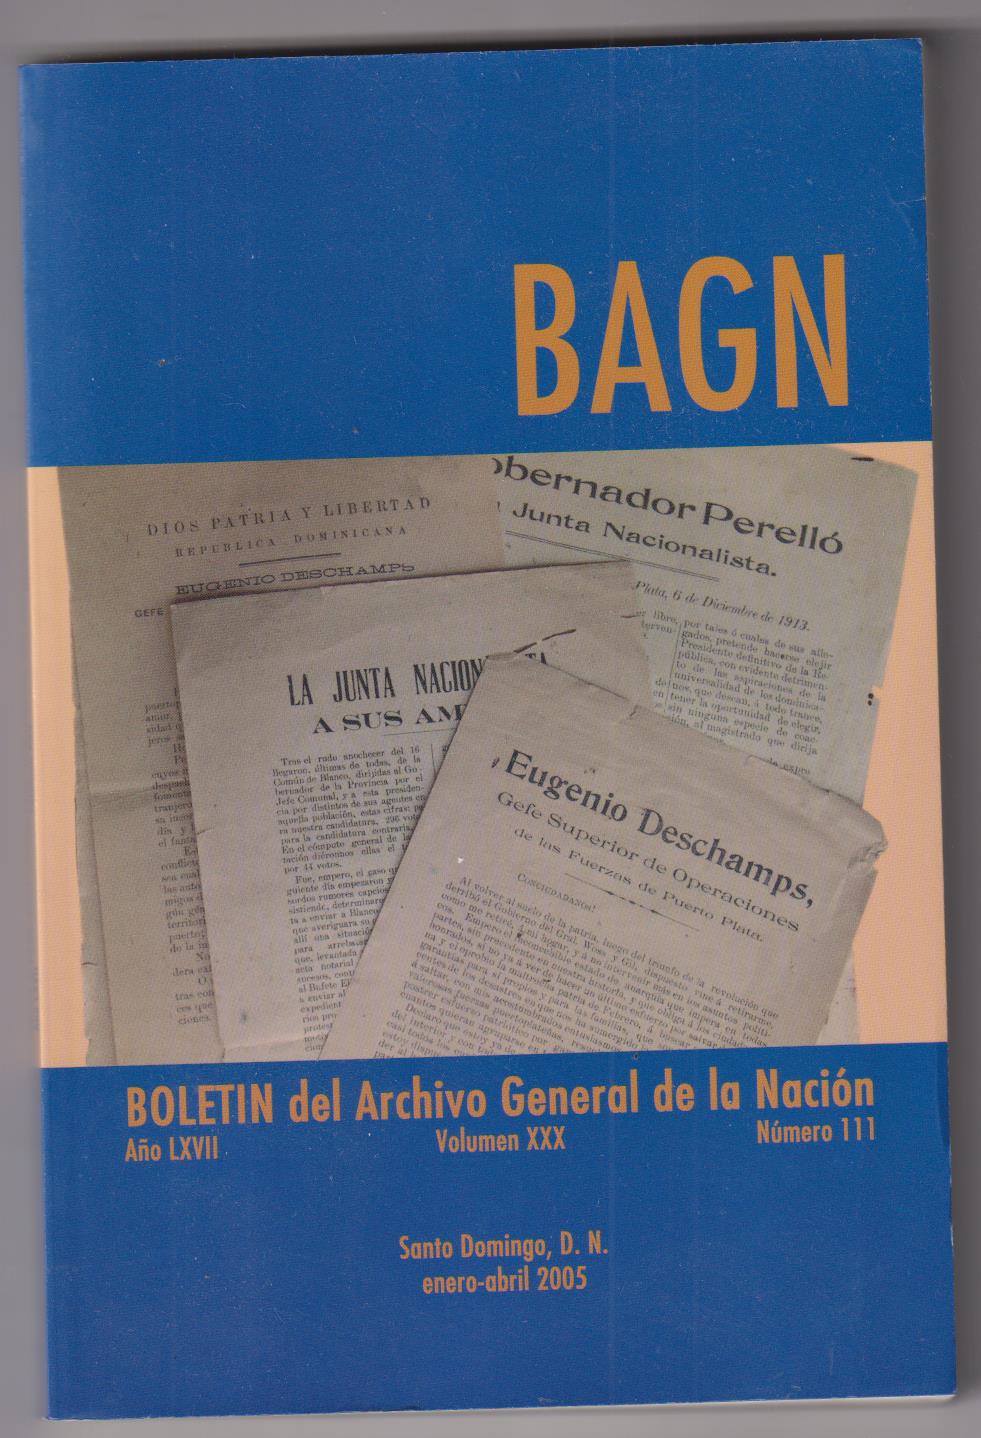 Bang. Boletín del Archivo General de la Nación. Vol. XXX. Número 111. Santo Domingo 2005